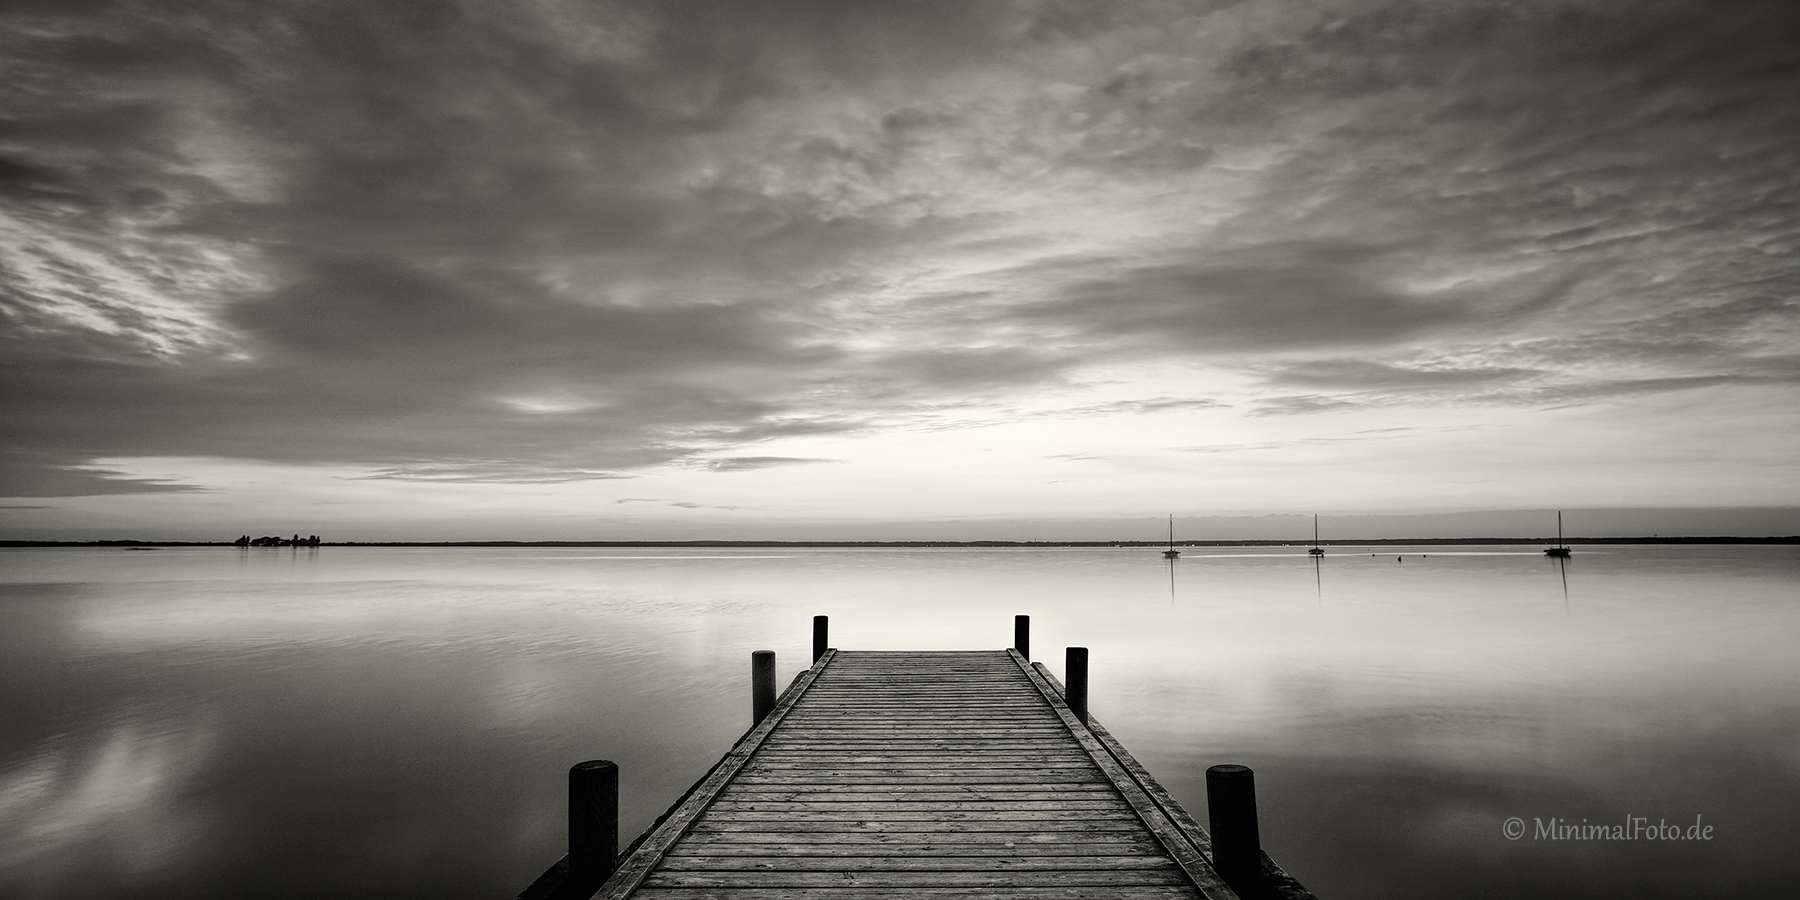 Landschaft-landscape-Minimalismus-minimalistisch-minimalistic-black-white-schwarz-weiss-See-Lake-dusk-daemmerung-abend-stimmung-H_MG_7090-sw